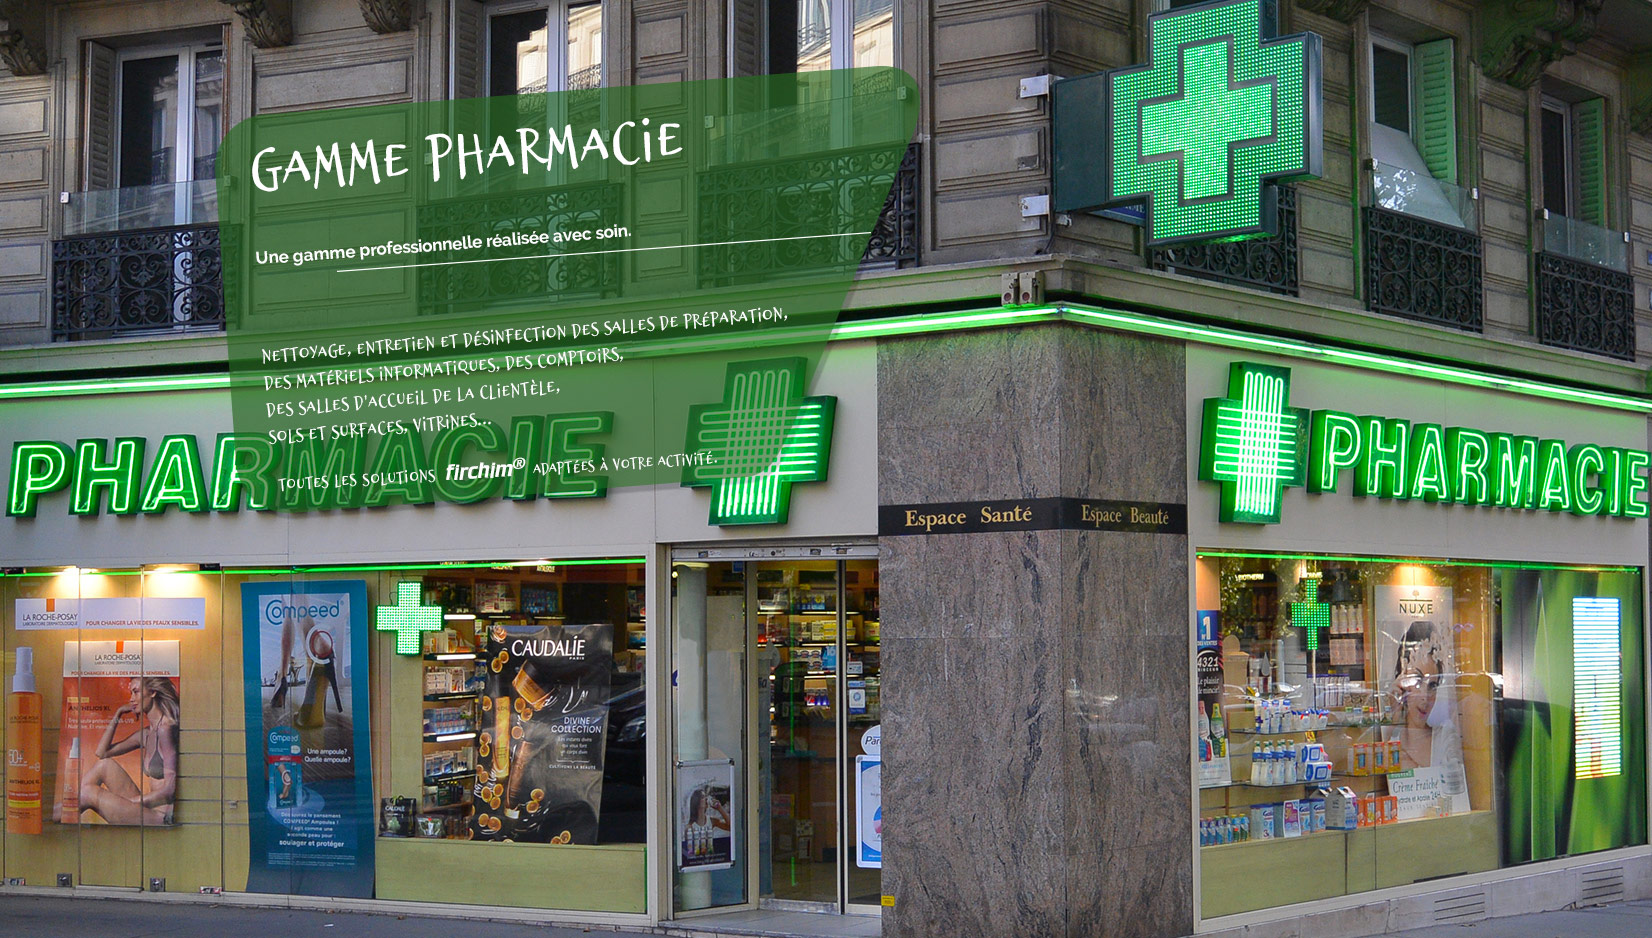 Gamme Pharmacie